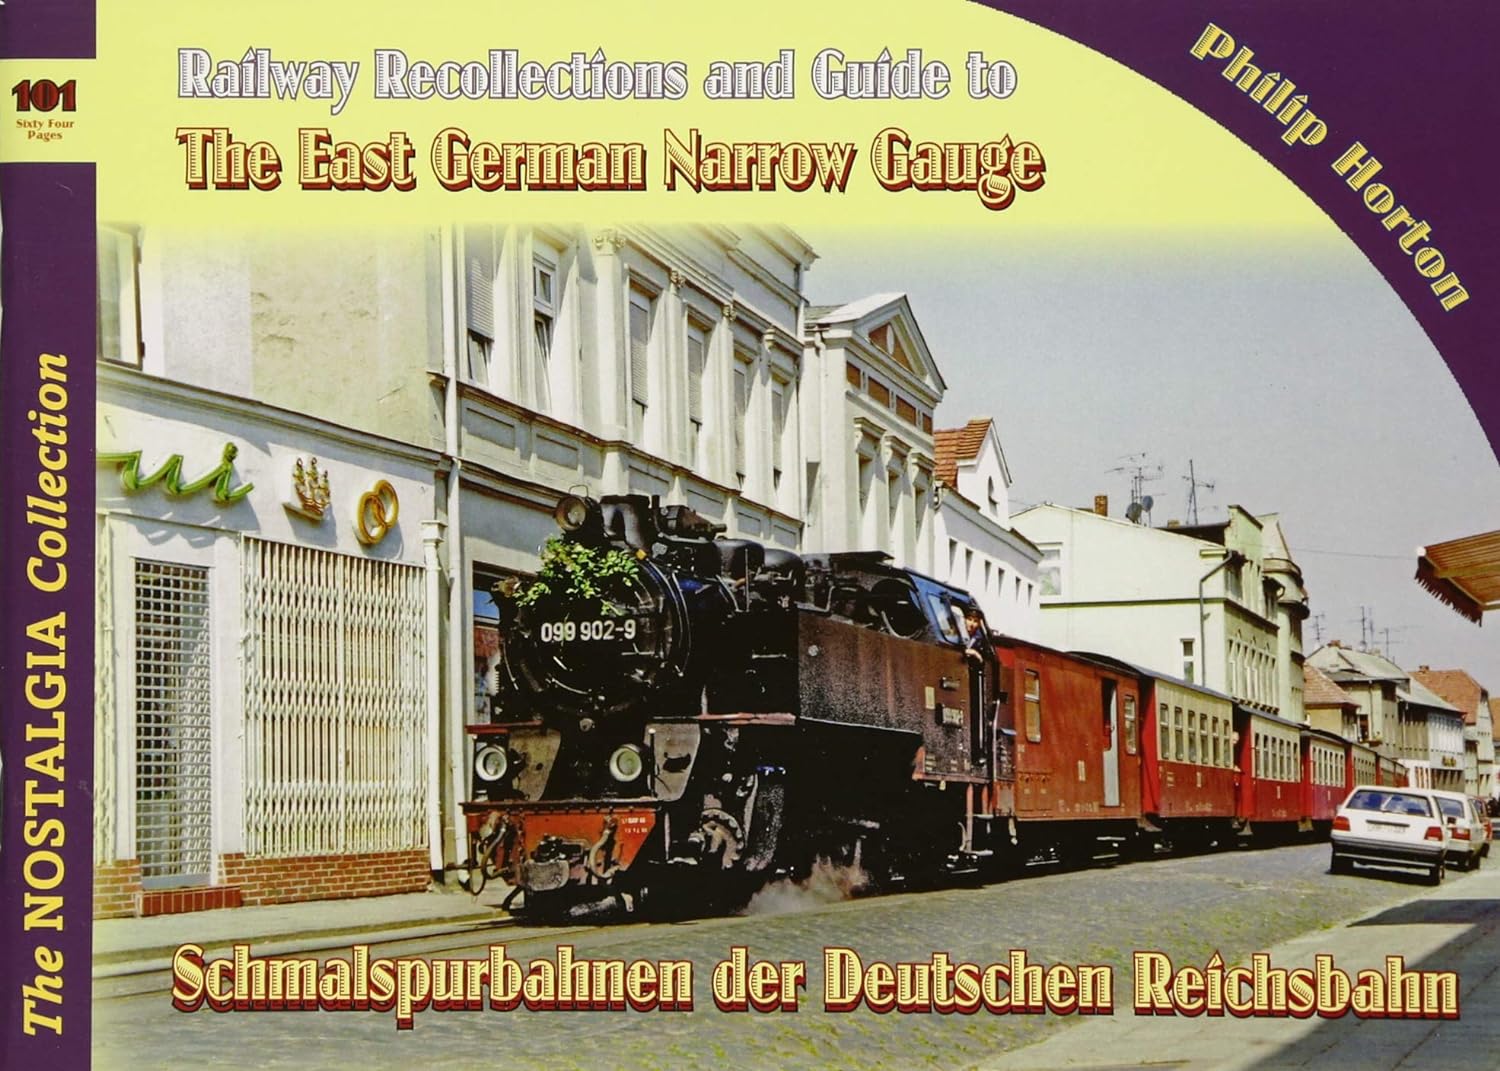 Vol 101 Railways & RecollectionsThe East German Narrow GaugeSchmalspurbahnen der Deutschen Reichsbahn